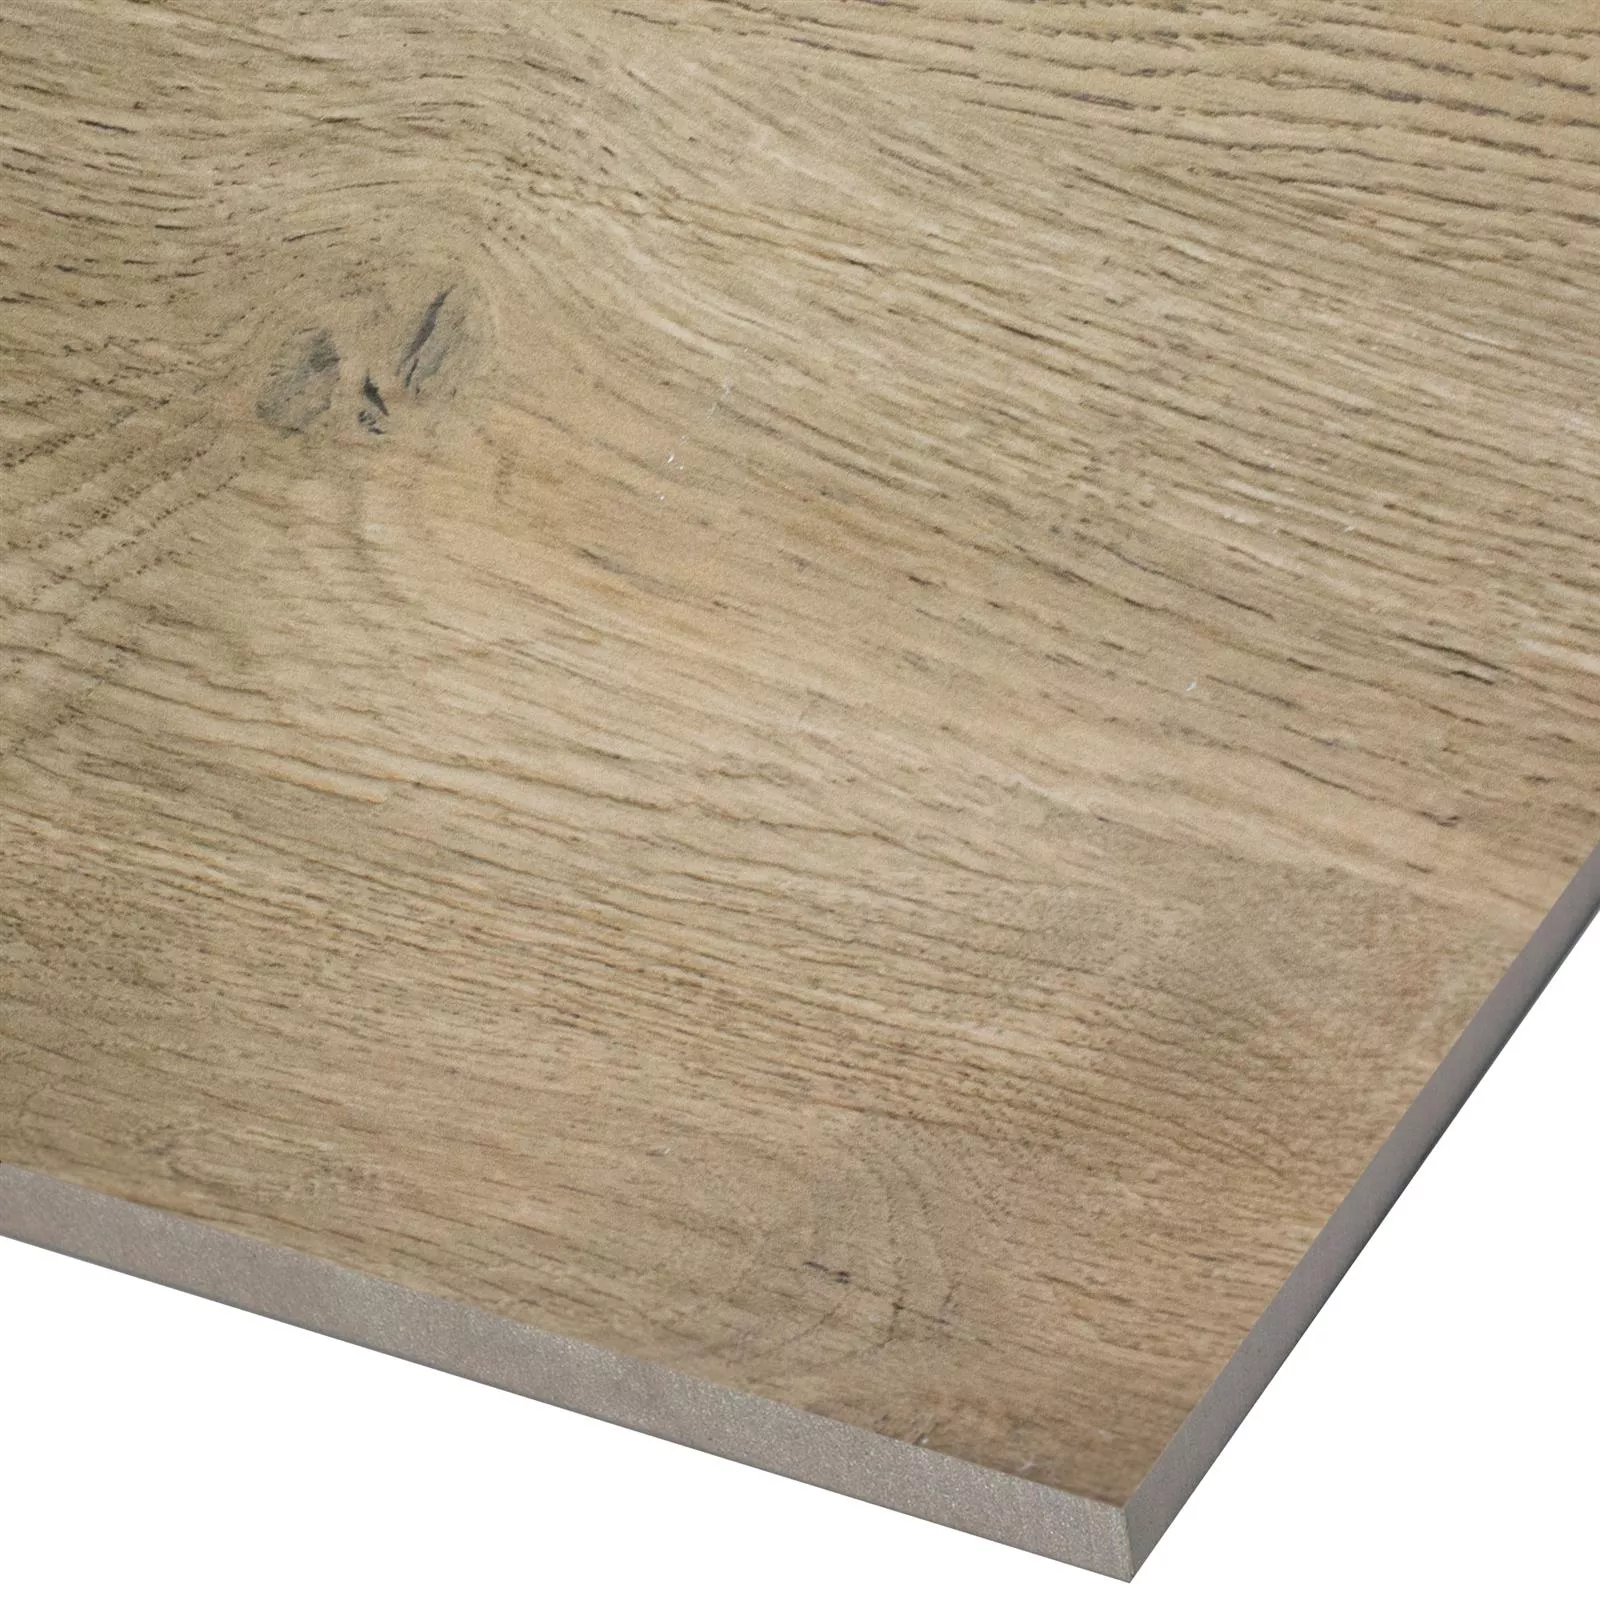 Sample Floor Tiles Wood Optic Alexandria Dark Beige 30x60cm